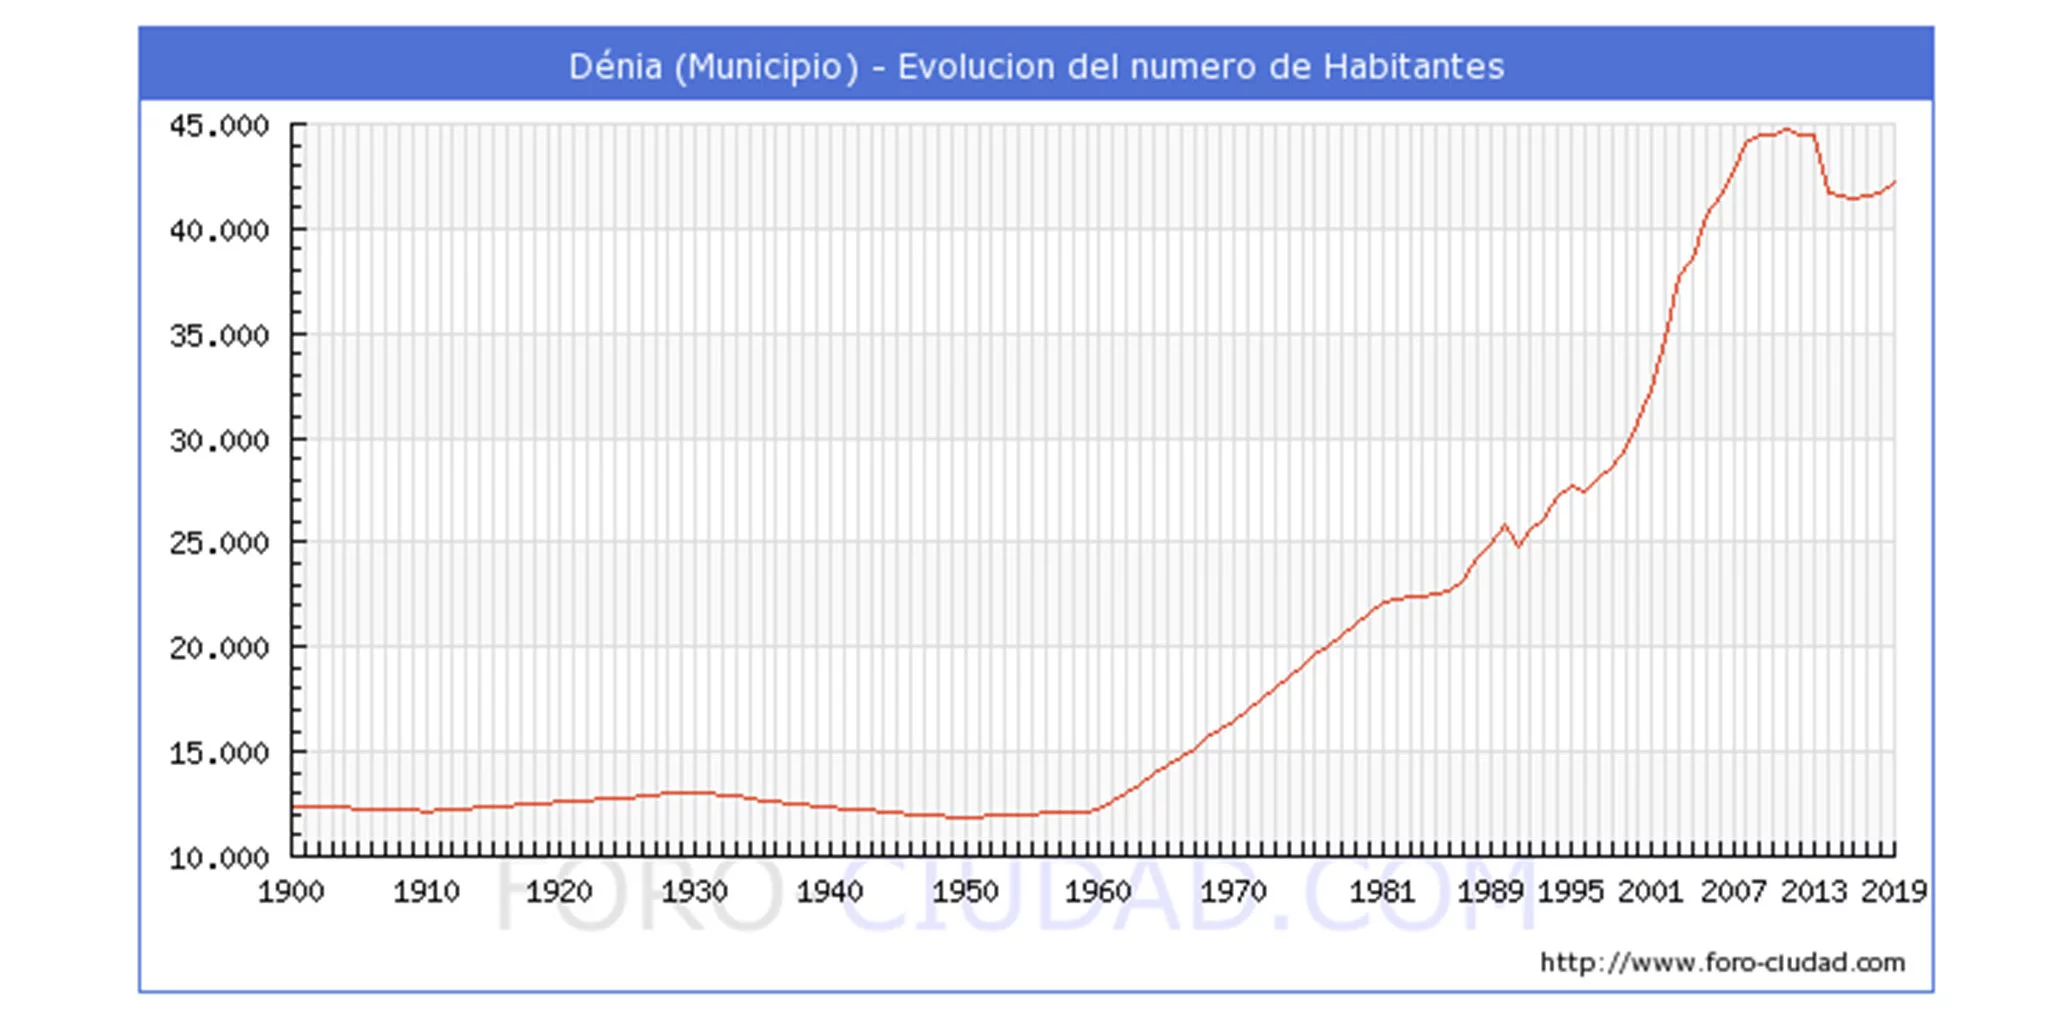 Evolución de la población de Dénia durante el siglo XX y principios del XXI (Imagen de foro-ciudad.com)